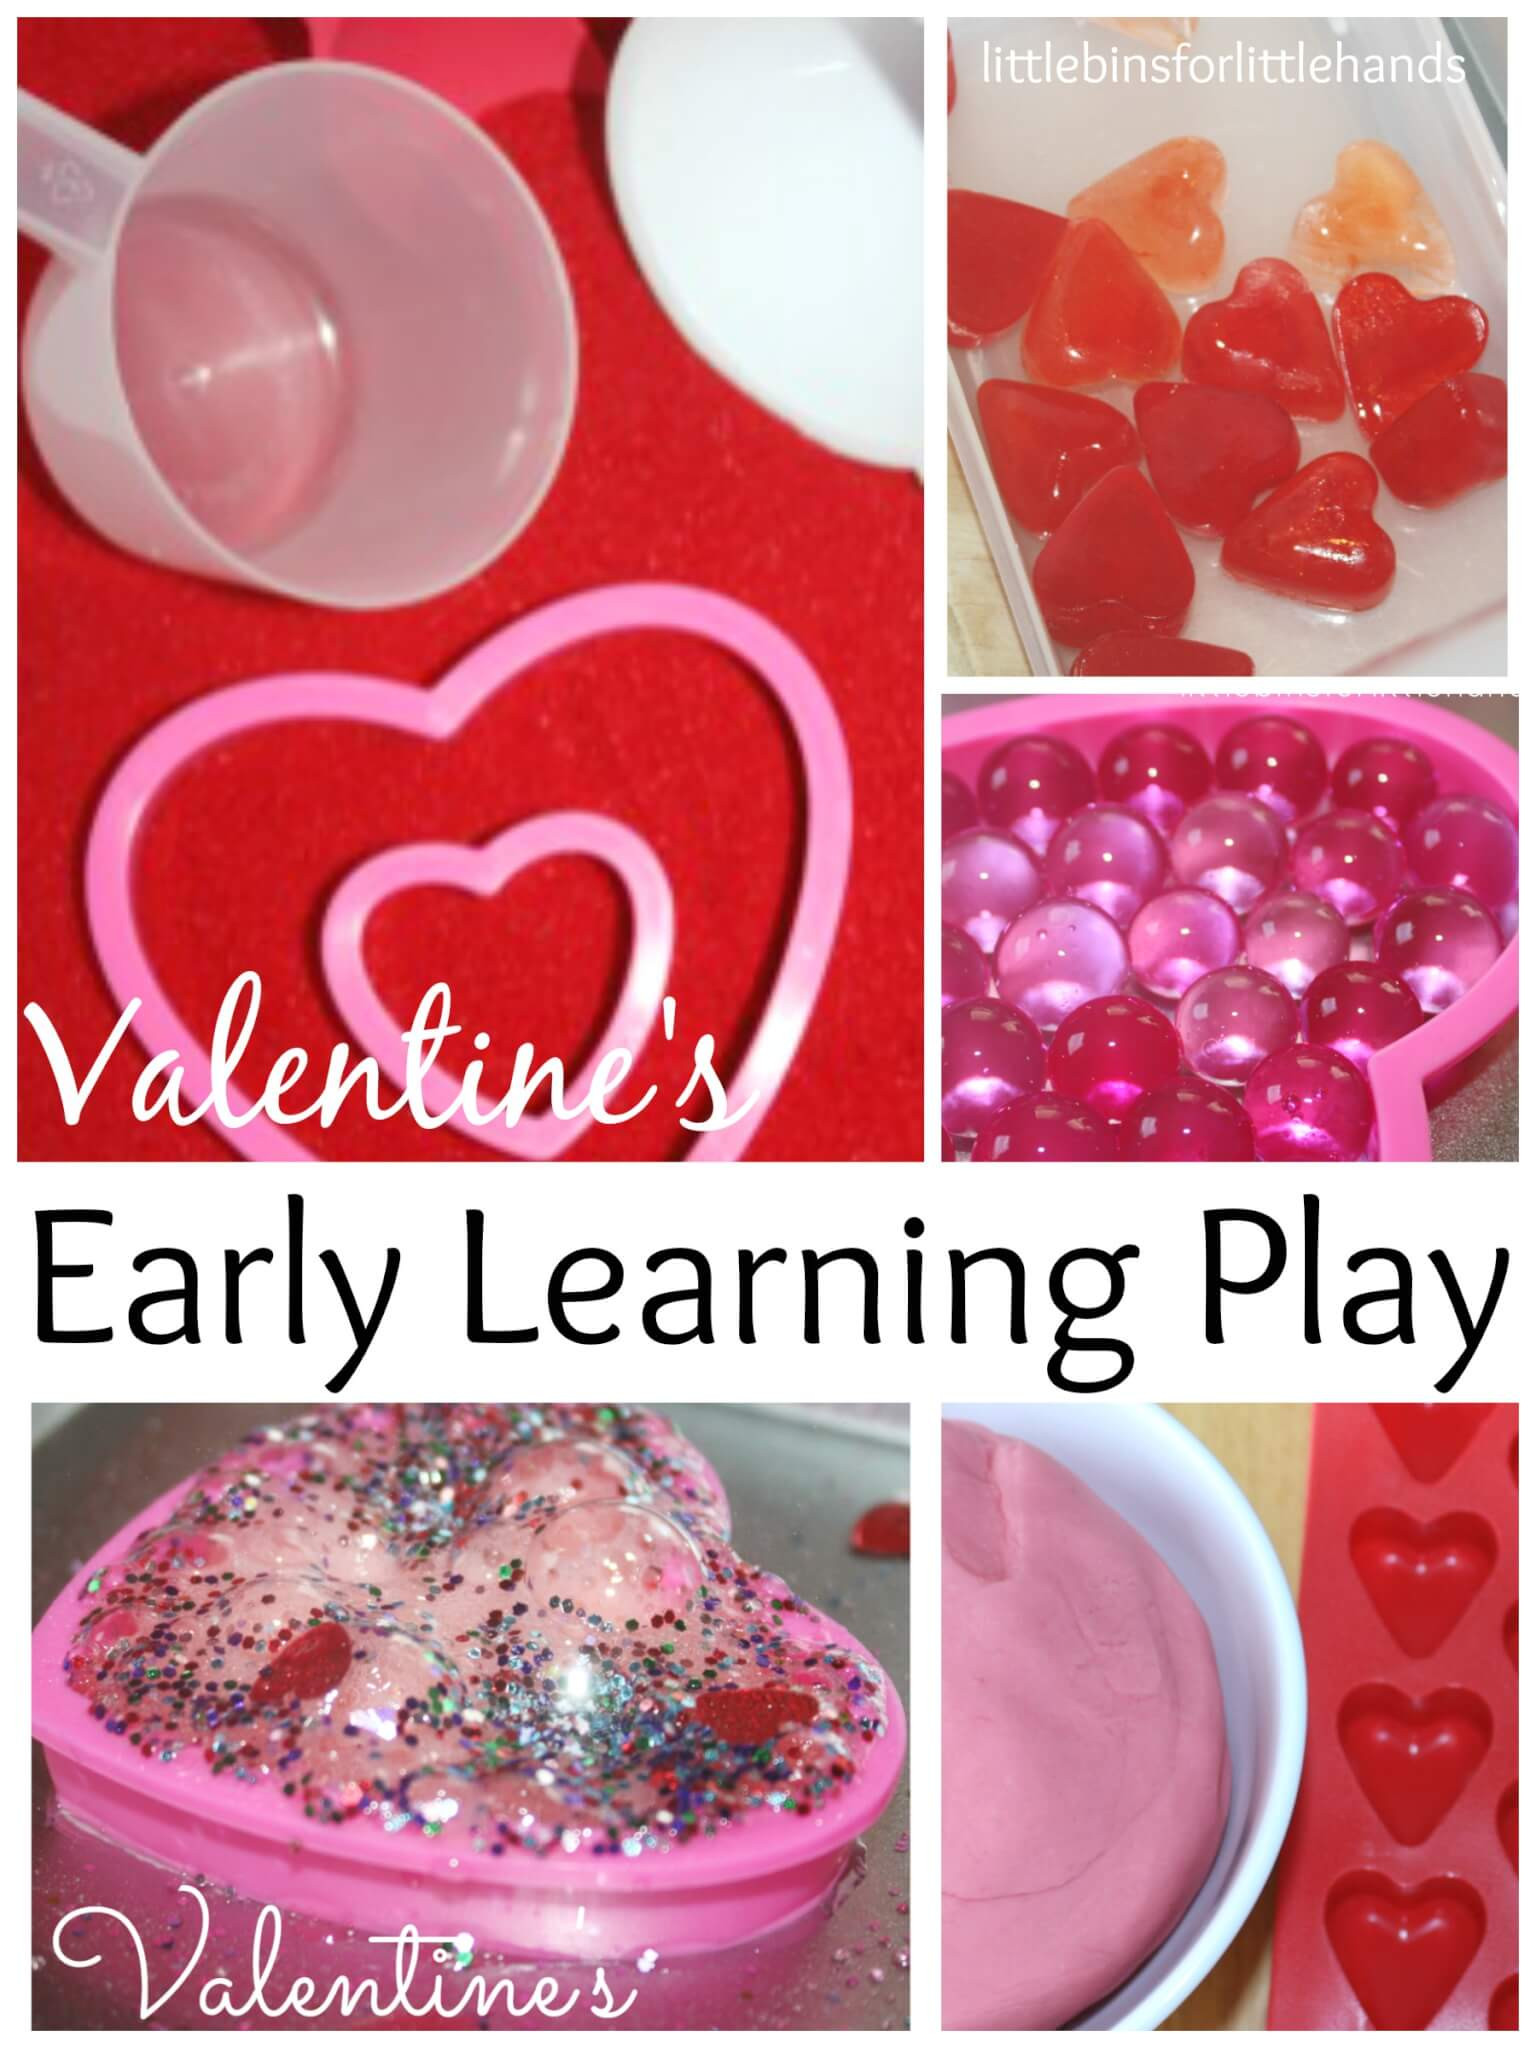 Valentines Day Activities For Preschoolers
 Valentines Preschool Activities for Early Learning